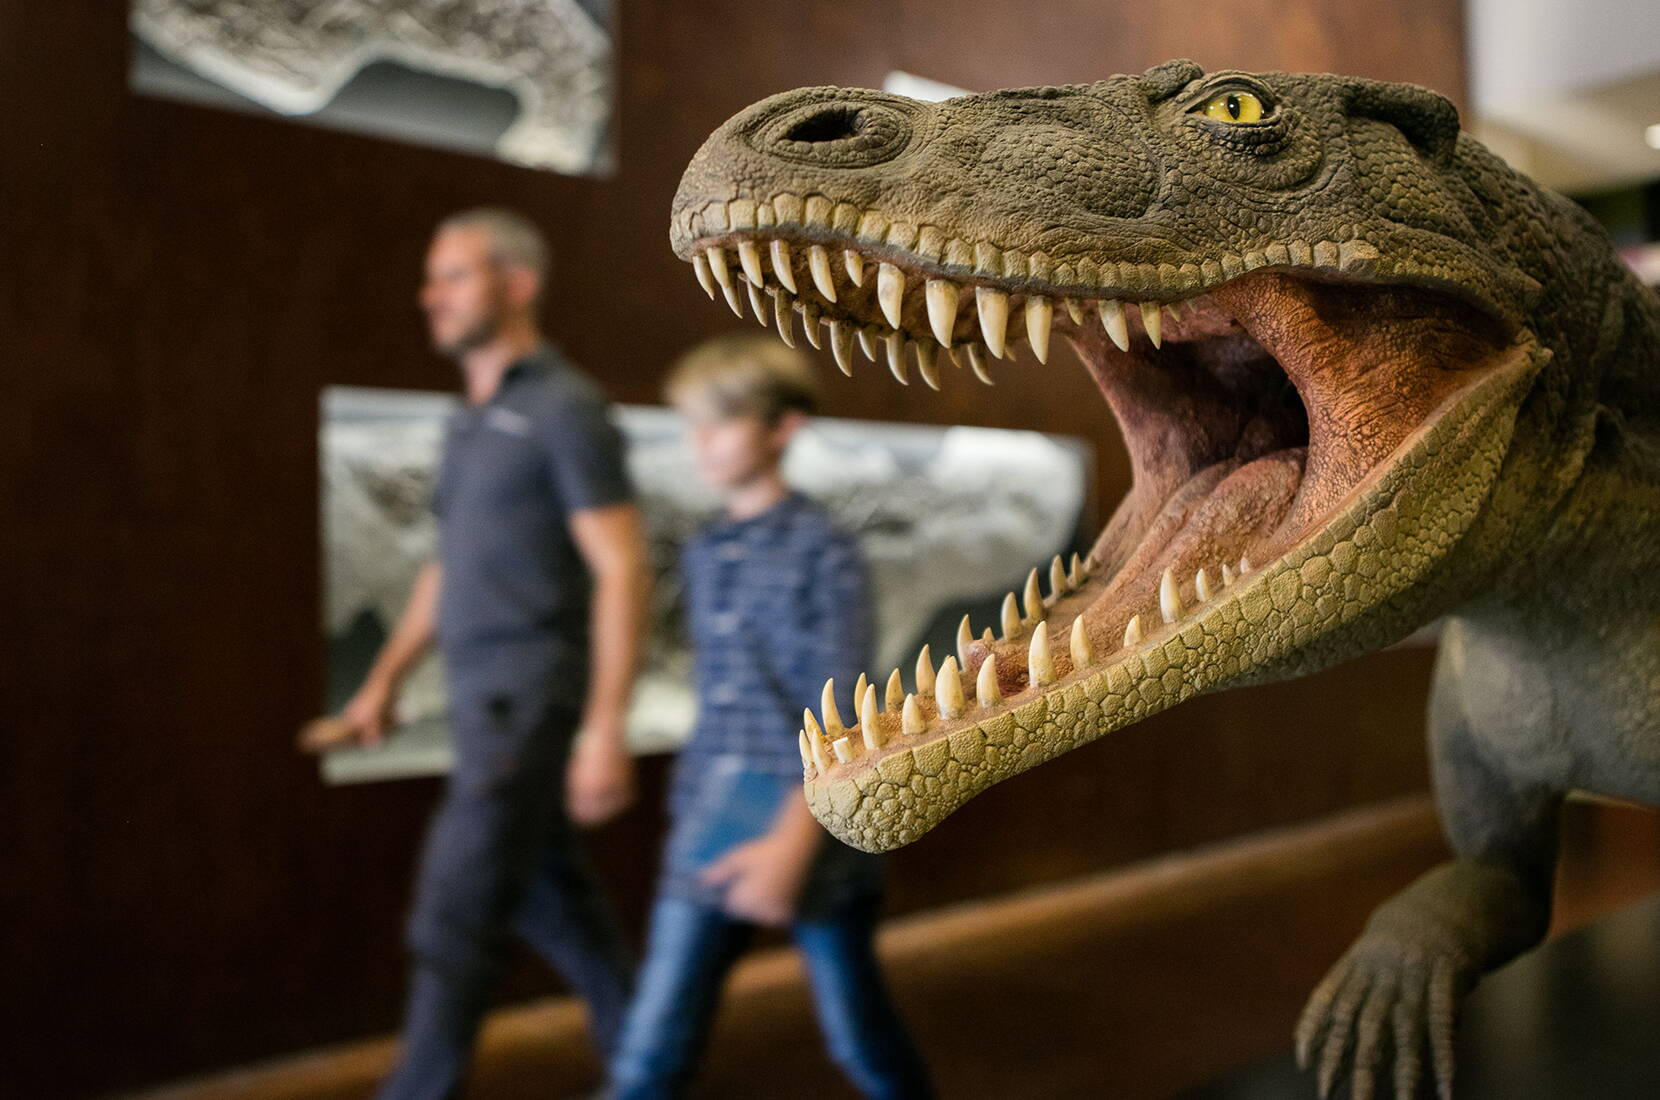 Familienausflug Fossilienmuseum. 
Ein Besuch dieser Landschaft, seiner Dörfer und Fossilienmuseen ermöglicht die faszinierende Entdeckung einer seit mehr als 200 Millionen Jahren vergangenen Welt.